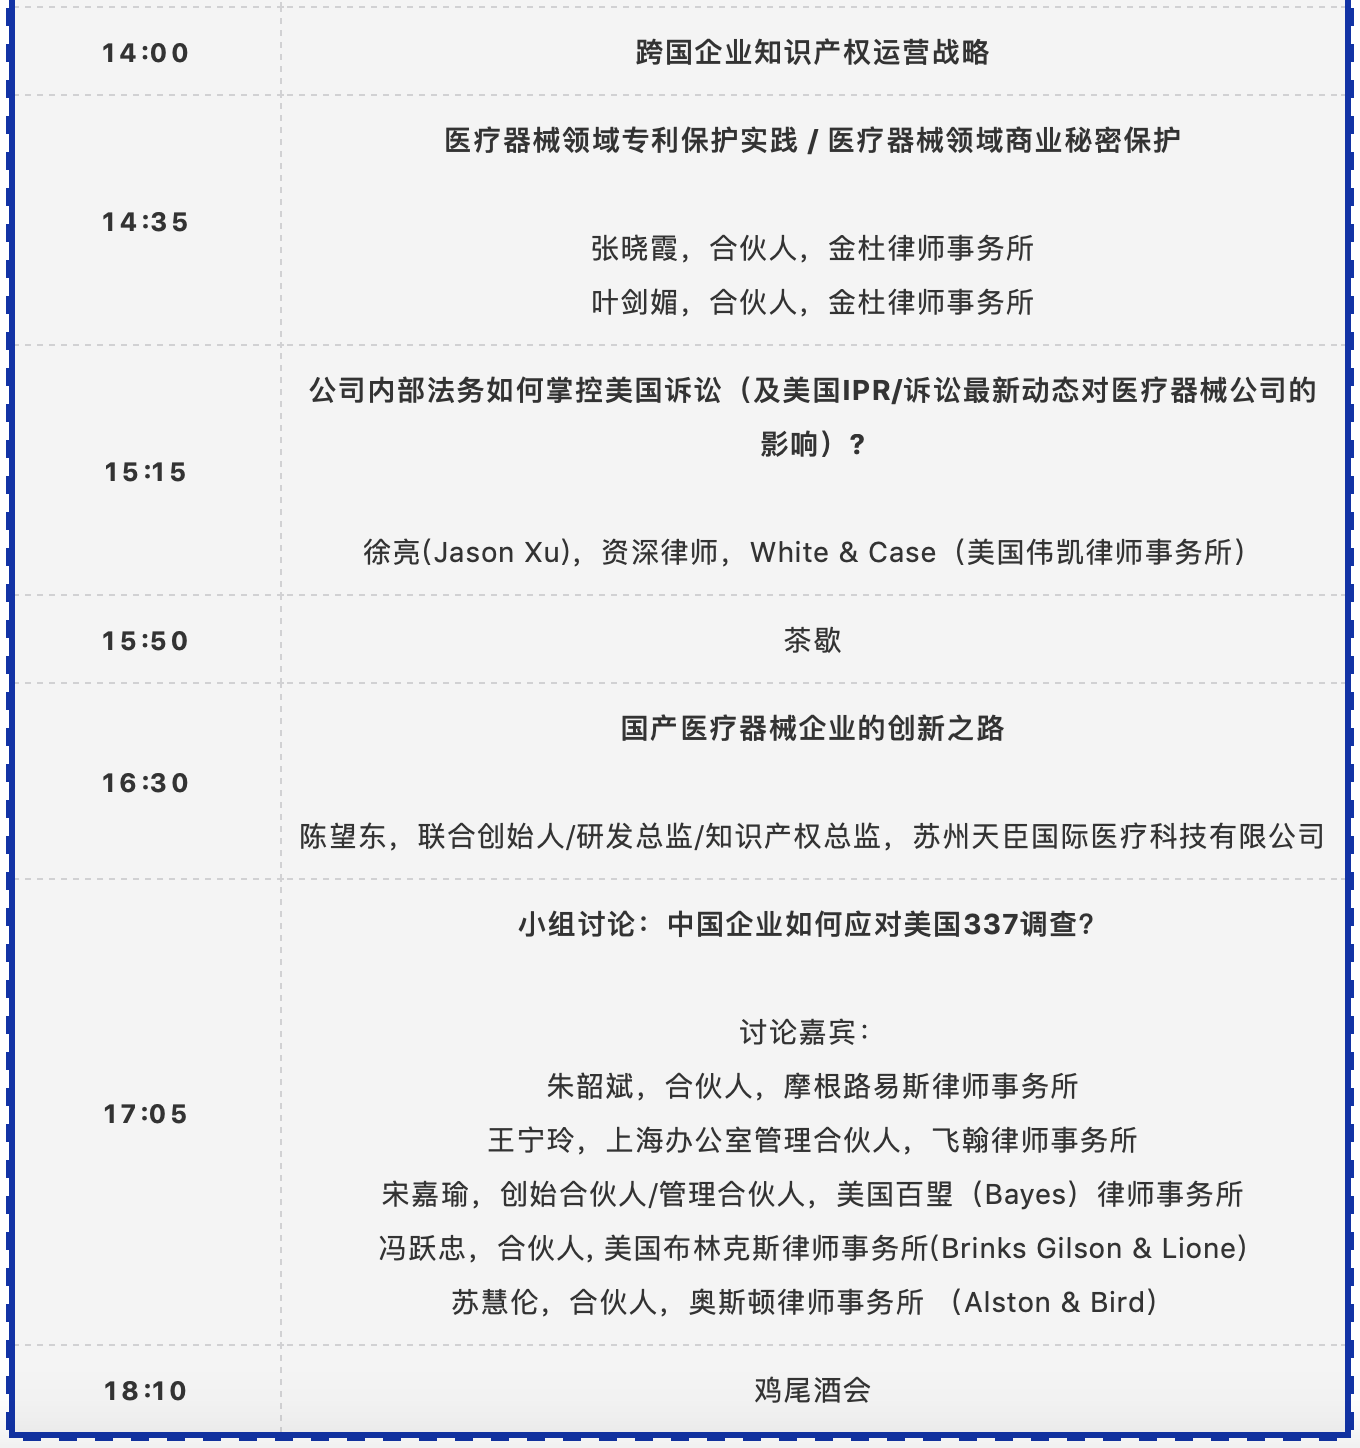 通知：中国医疗器械知识产权峰会2020将延期至6月5-6日举办！